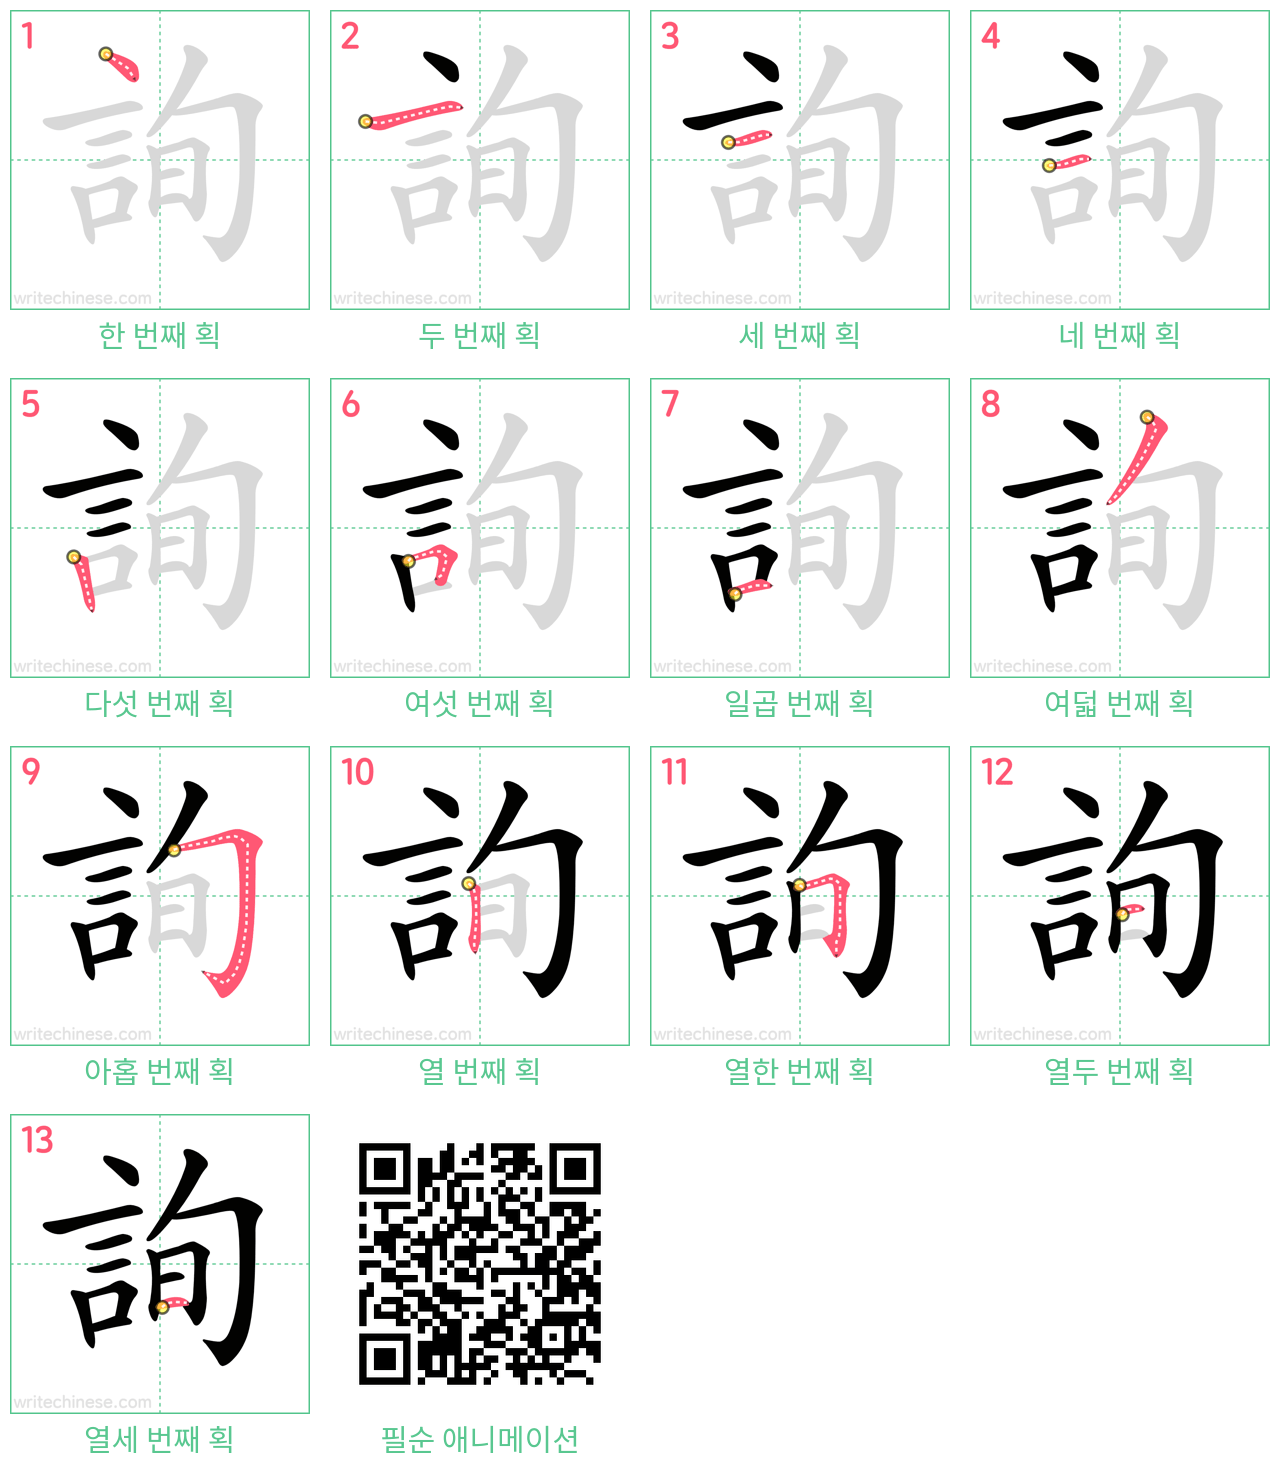 詢 step-by-step stroke order diagrams